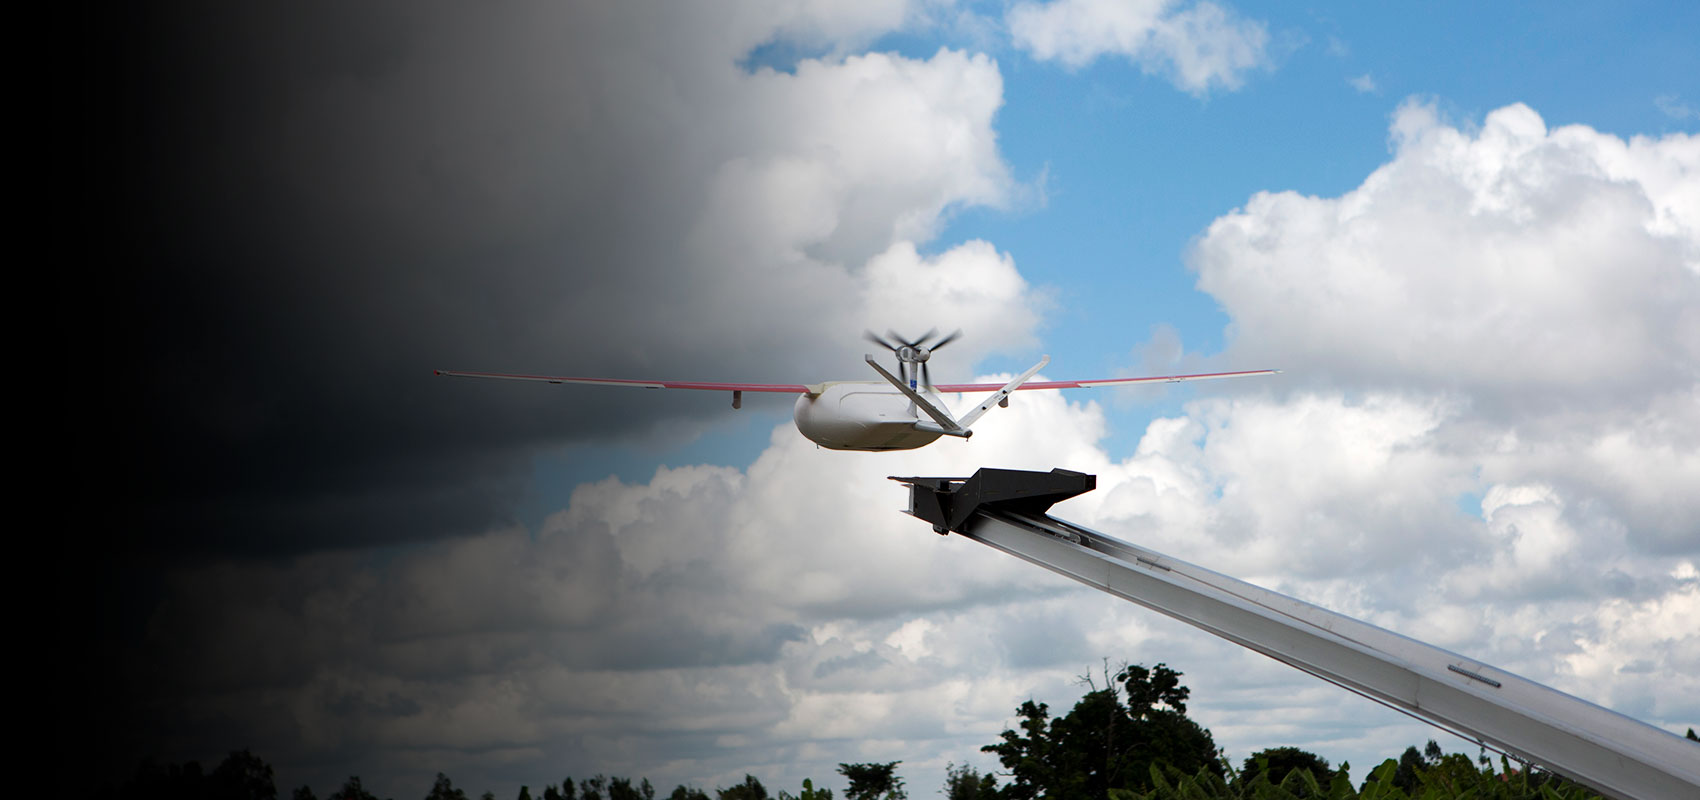 Drone launch. Credit: Gavi/Karel Prinsloo/2018